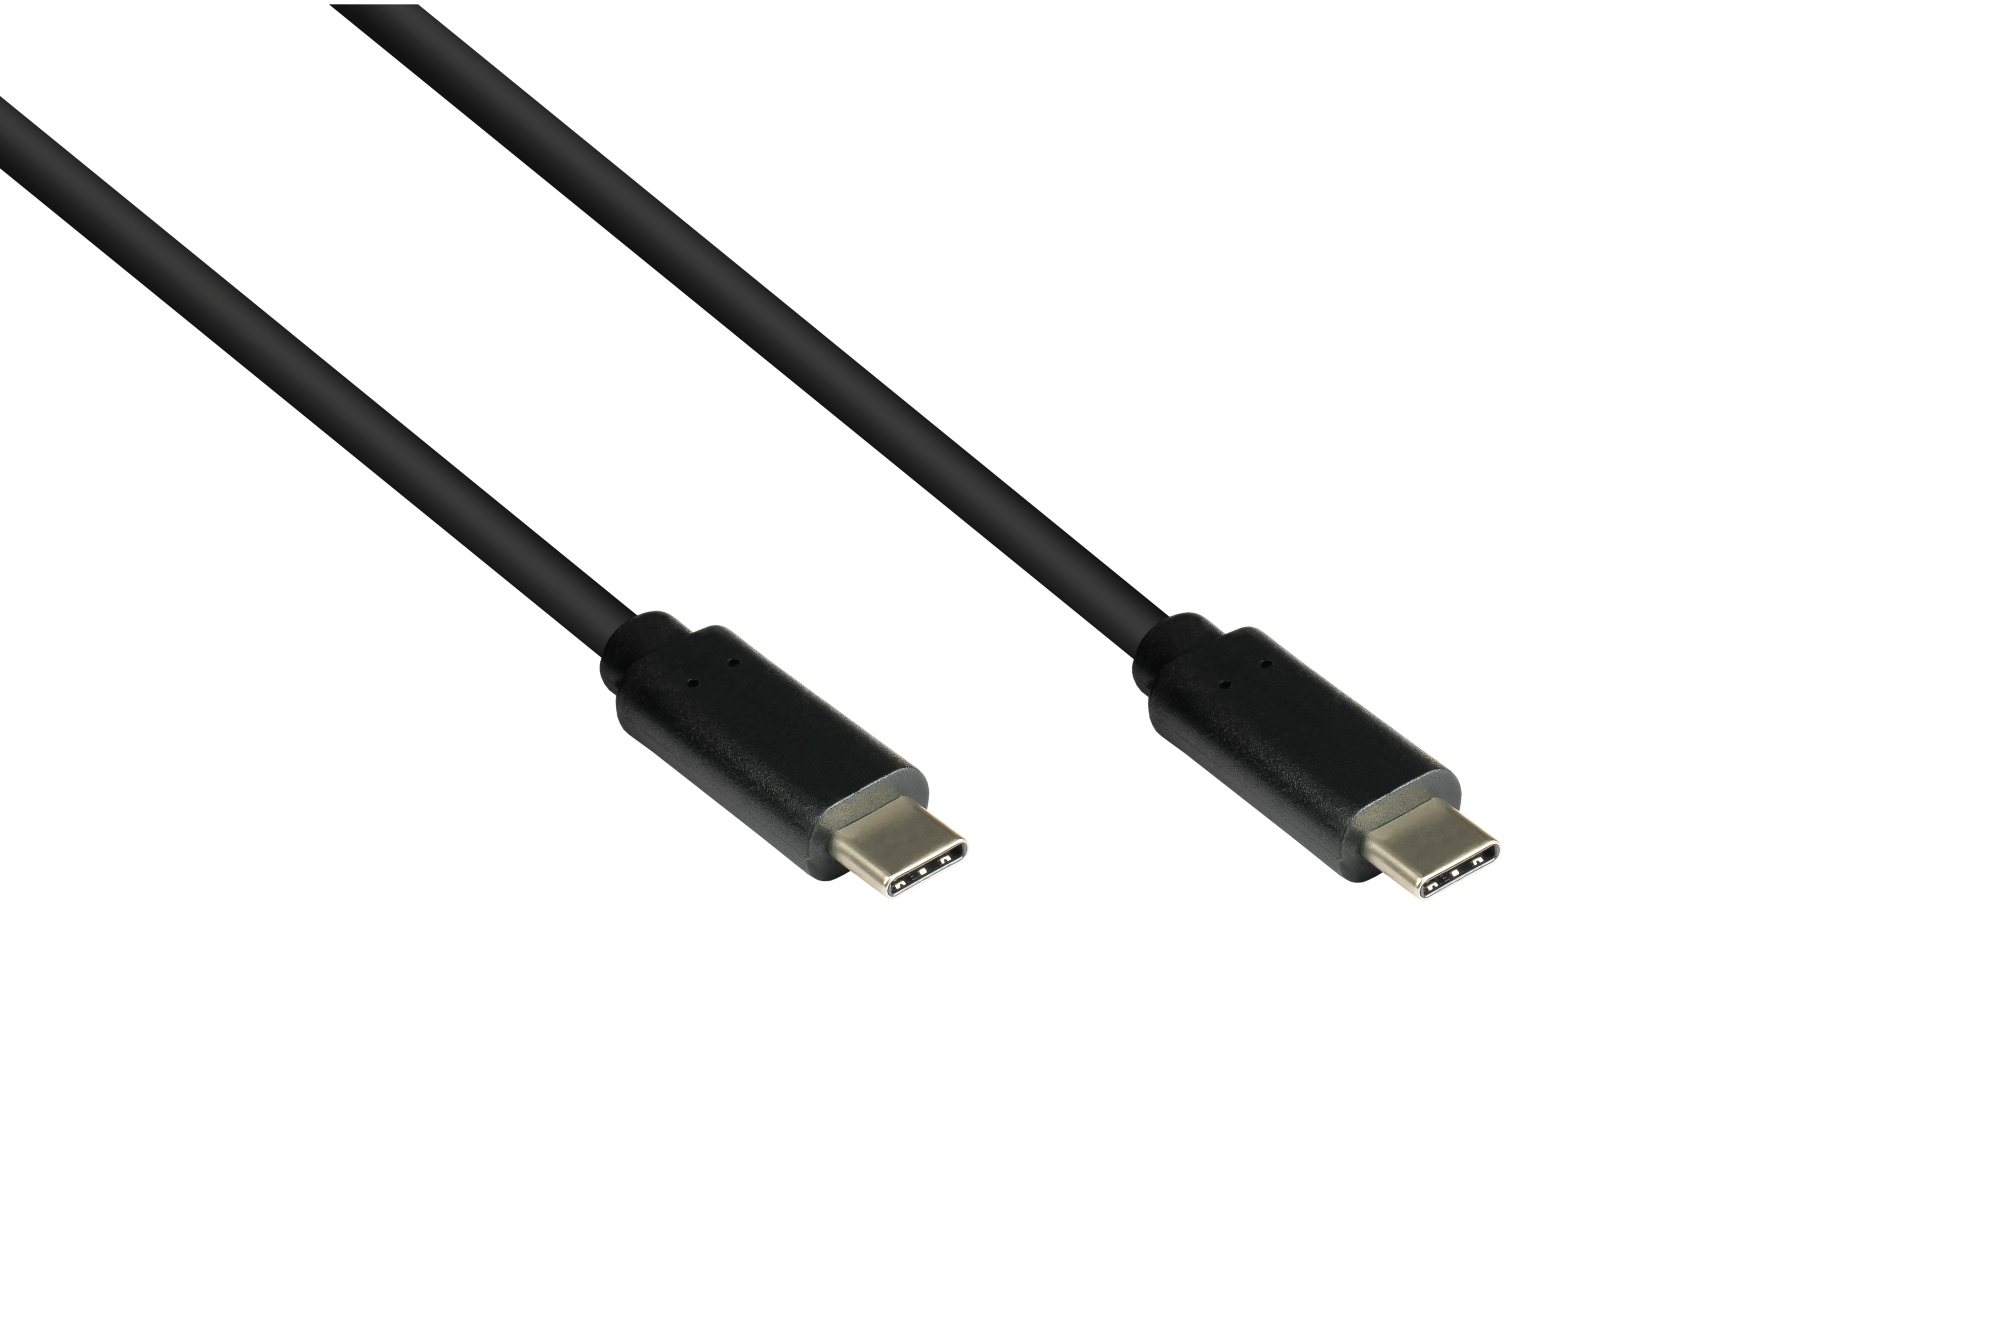 Lade- und Datenkabel USB 3.1 (Gen.1), USB-C™ Stecker beidseitig, CU, schwarz, 0,5m, Good Connections